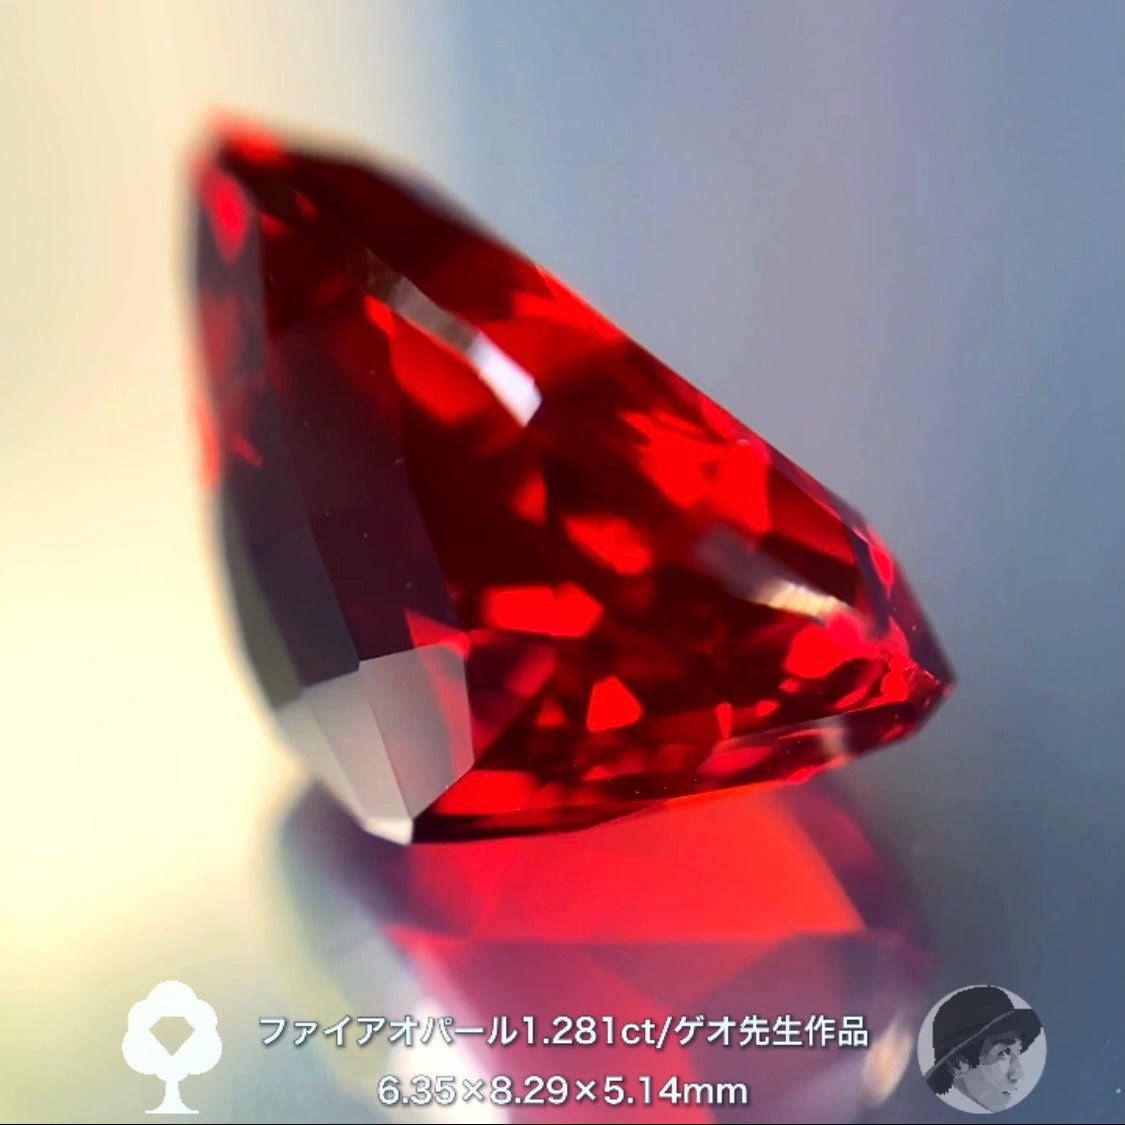 エネルギッシュな美しい赤です👍ゲオ先生の傑作ファイアオパール1.281ct